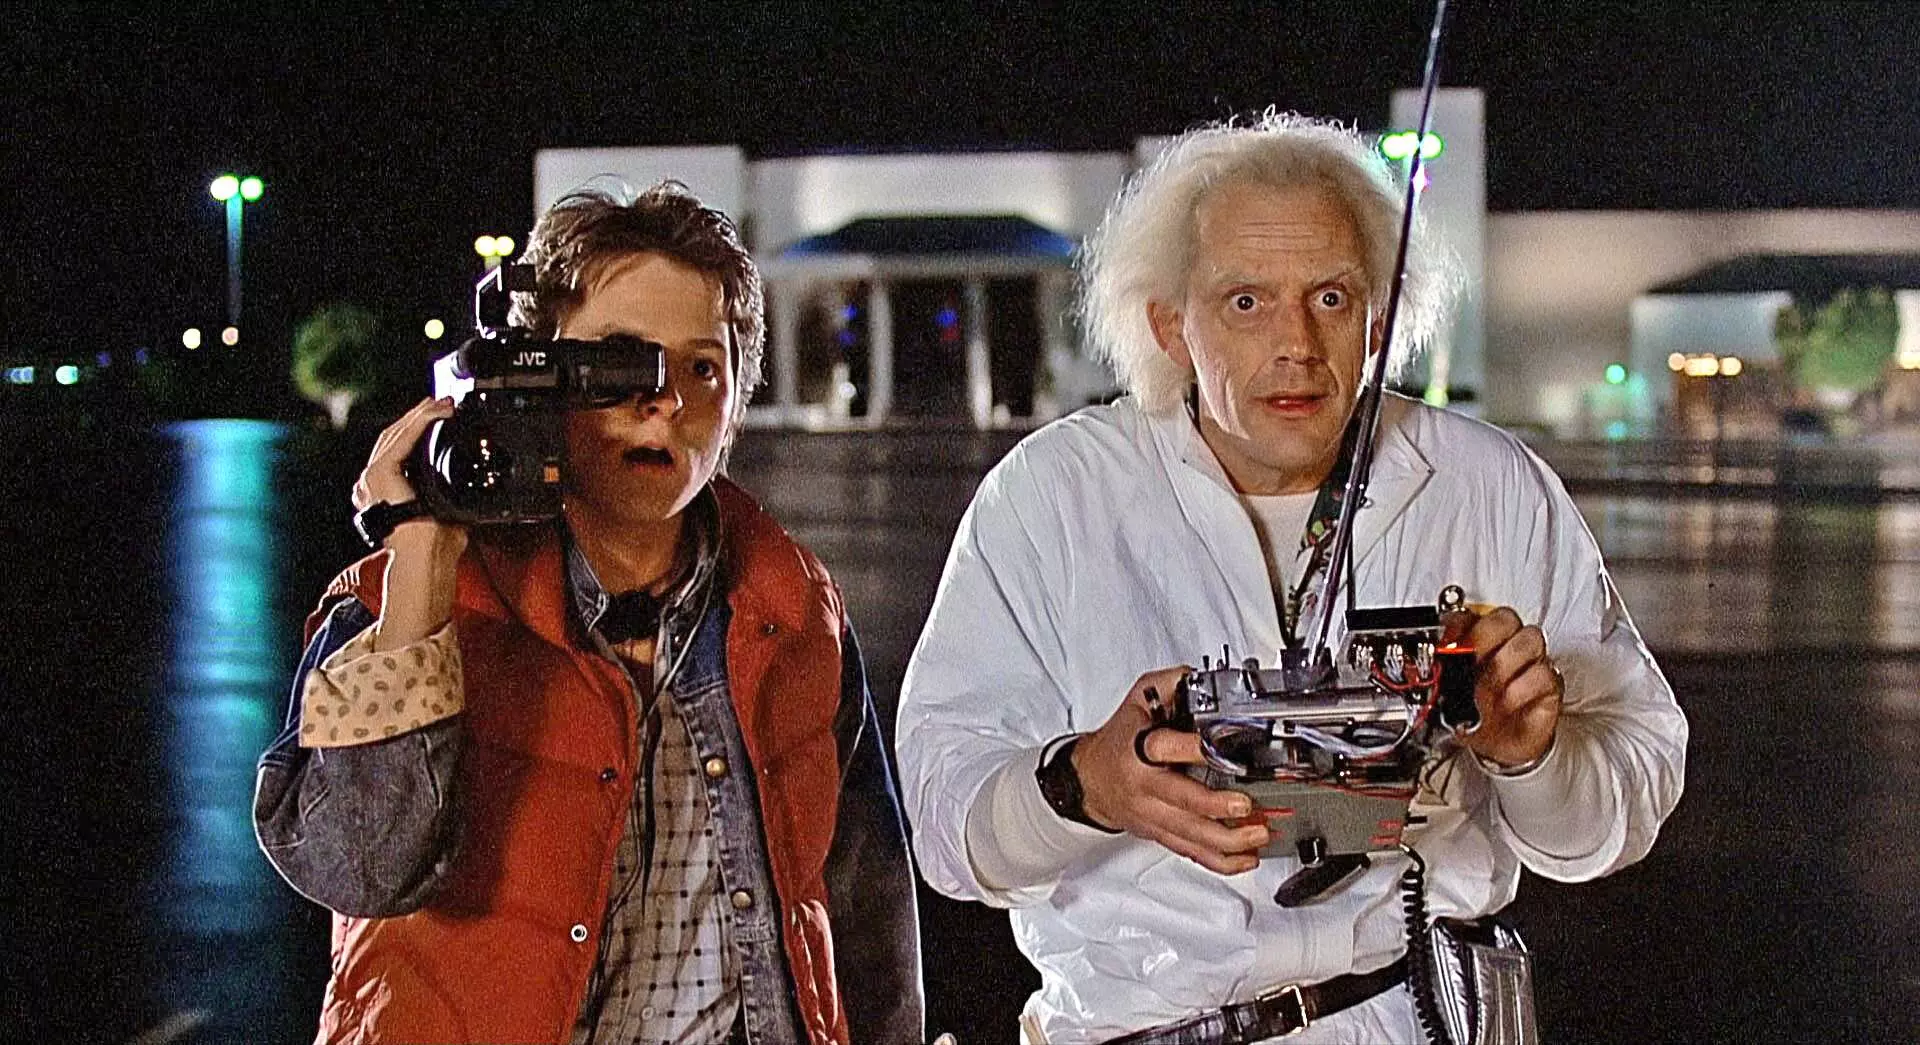 مایکل جی فاکس و کریستوفر لوید در فیلم بازگشت به آینده